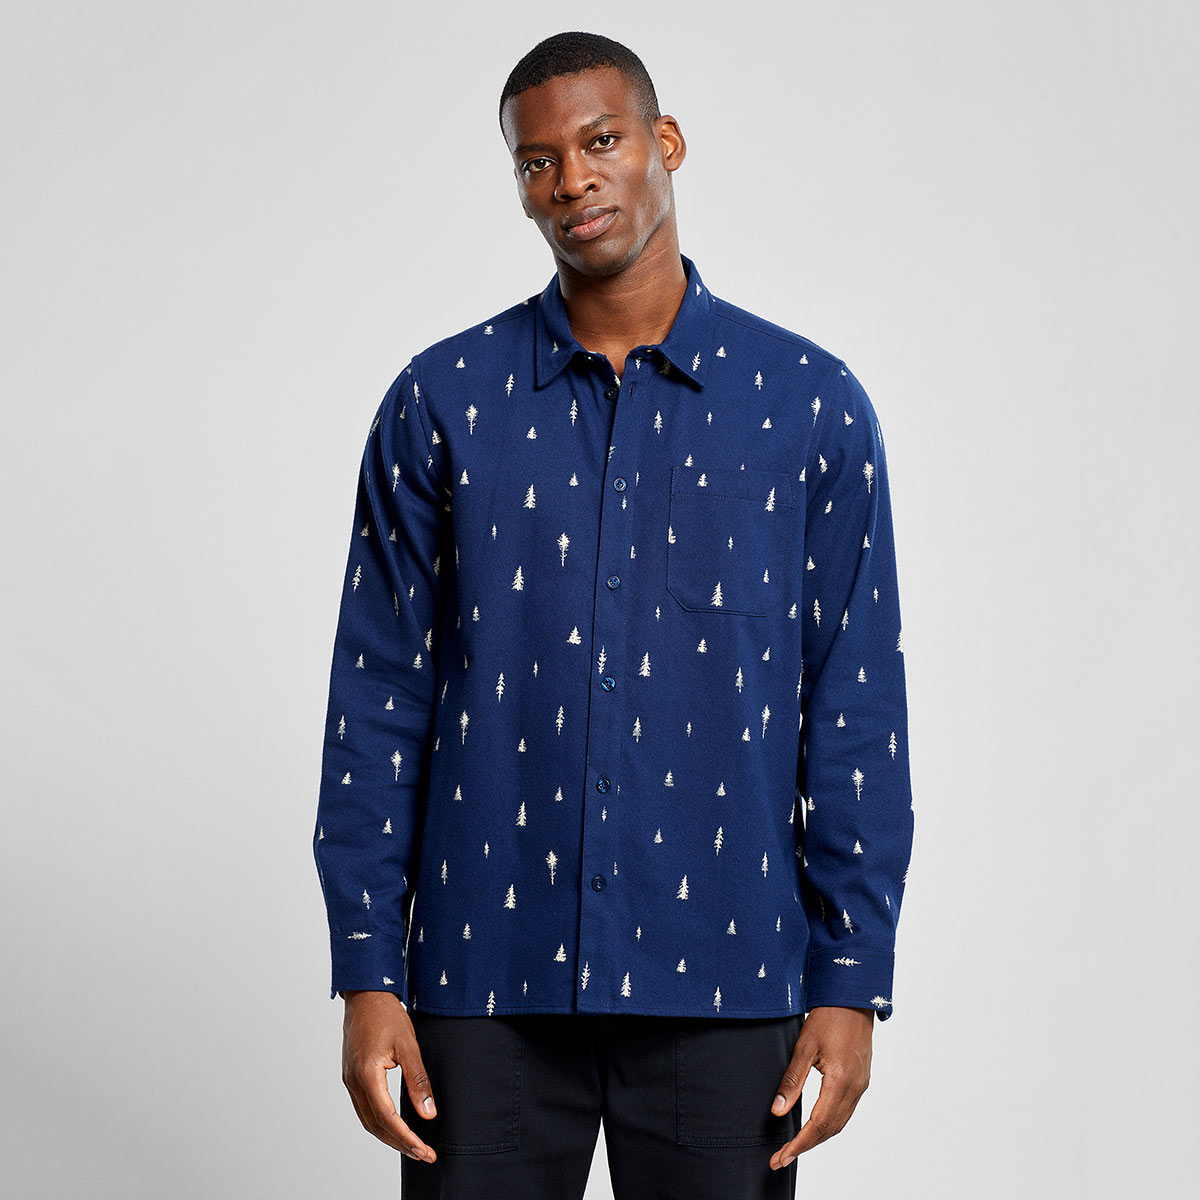 Lässiges dunkelblaues Hemd aus kuscheligem Bio-Baumwollflanell von Dedicated, umweltfreundlich bedruckt mit weißen Nadelbaumsilhouetten.